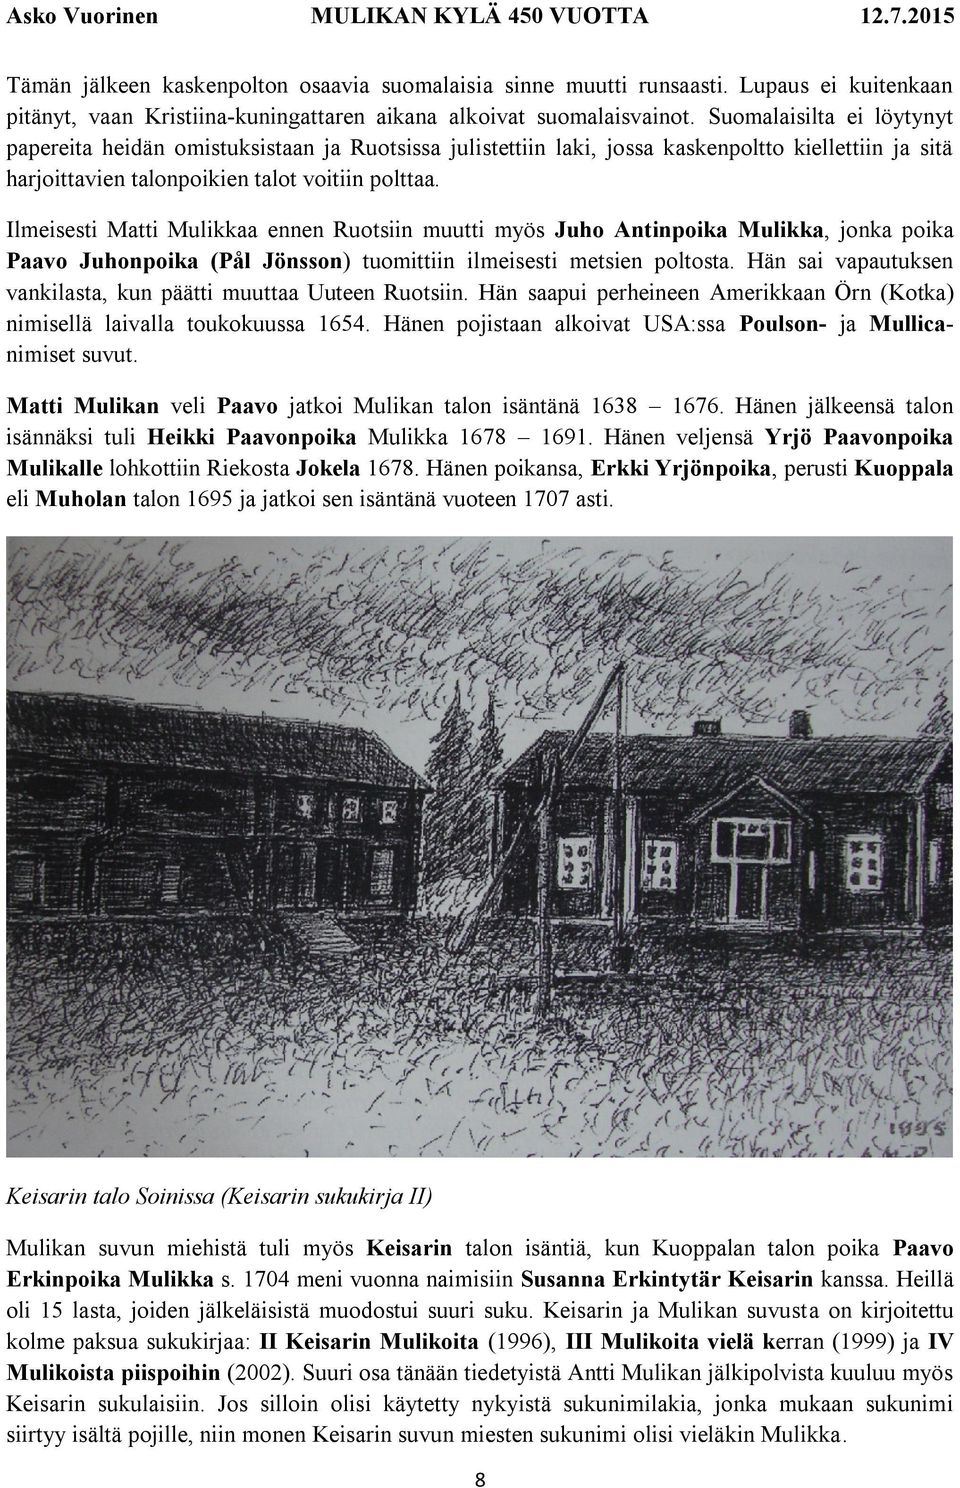 Ilmeisesti Matti Mulikkaa ennen Ruotsiin muutti myös Juho Antinpoika Mulikka, jonka poika Paavo Juhonpoika (Pål Jönsson) tuomittiin ilmeisesti metsien poltosta.